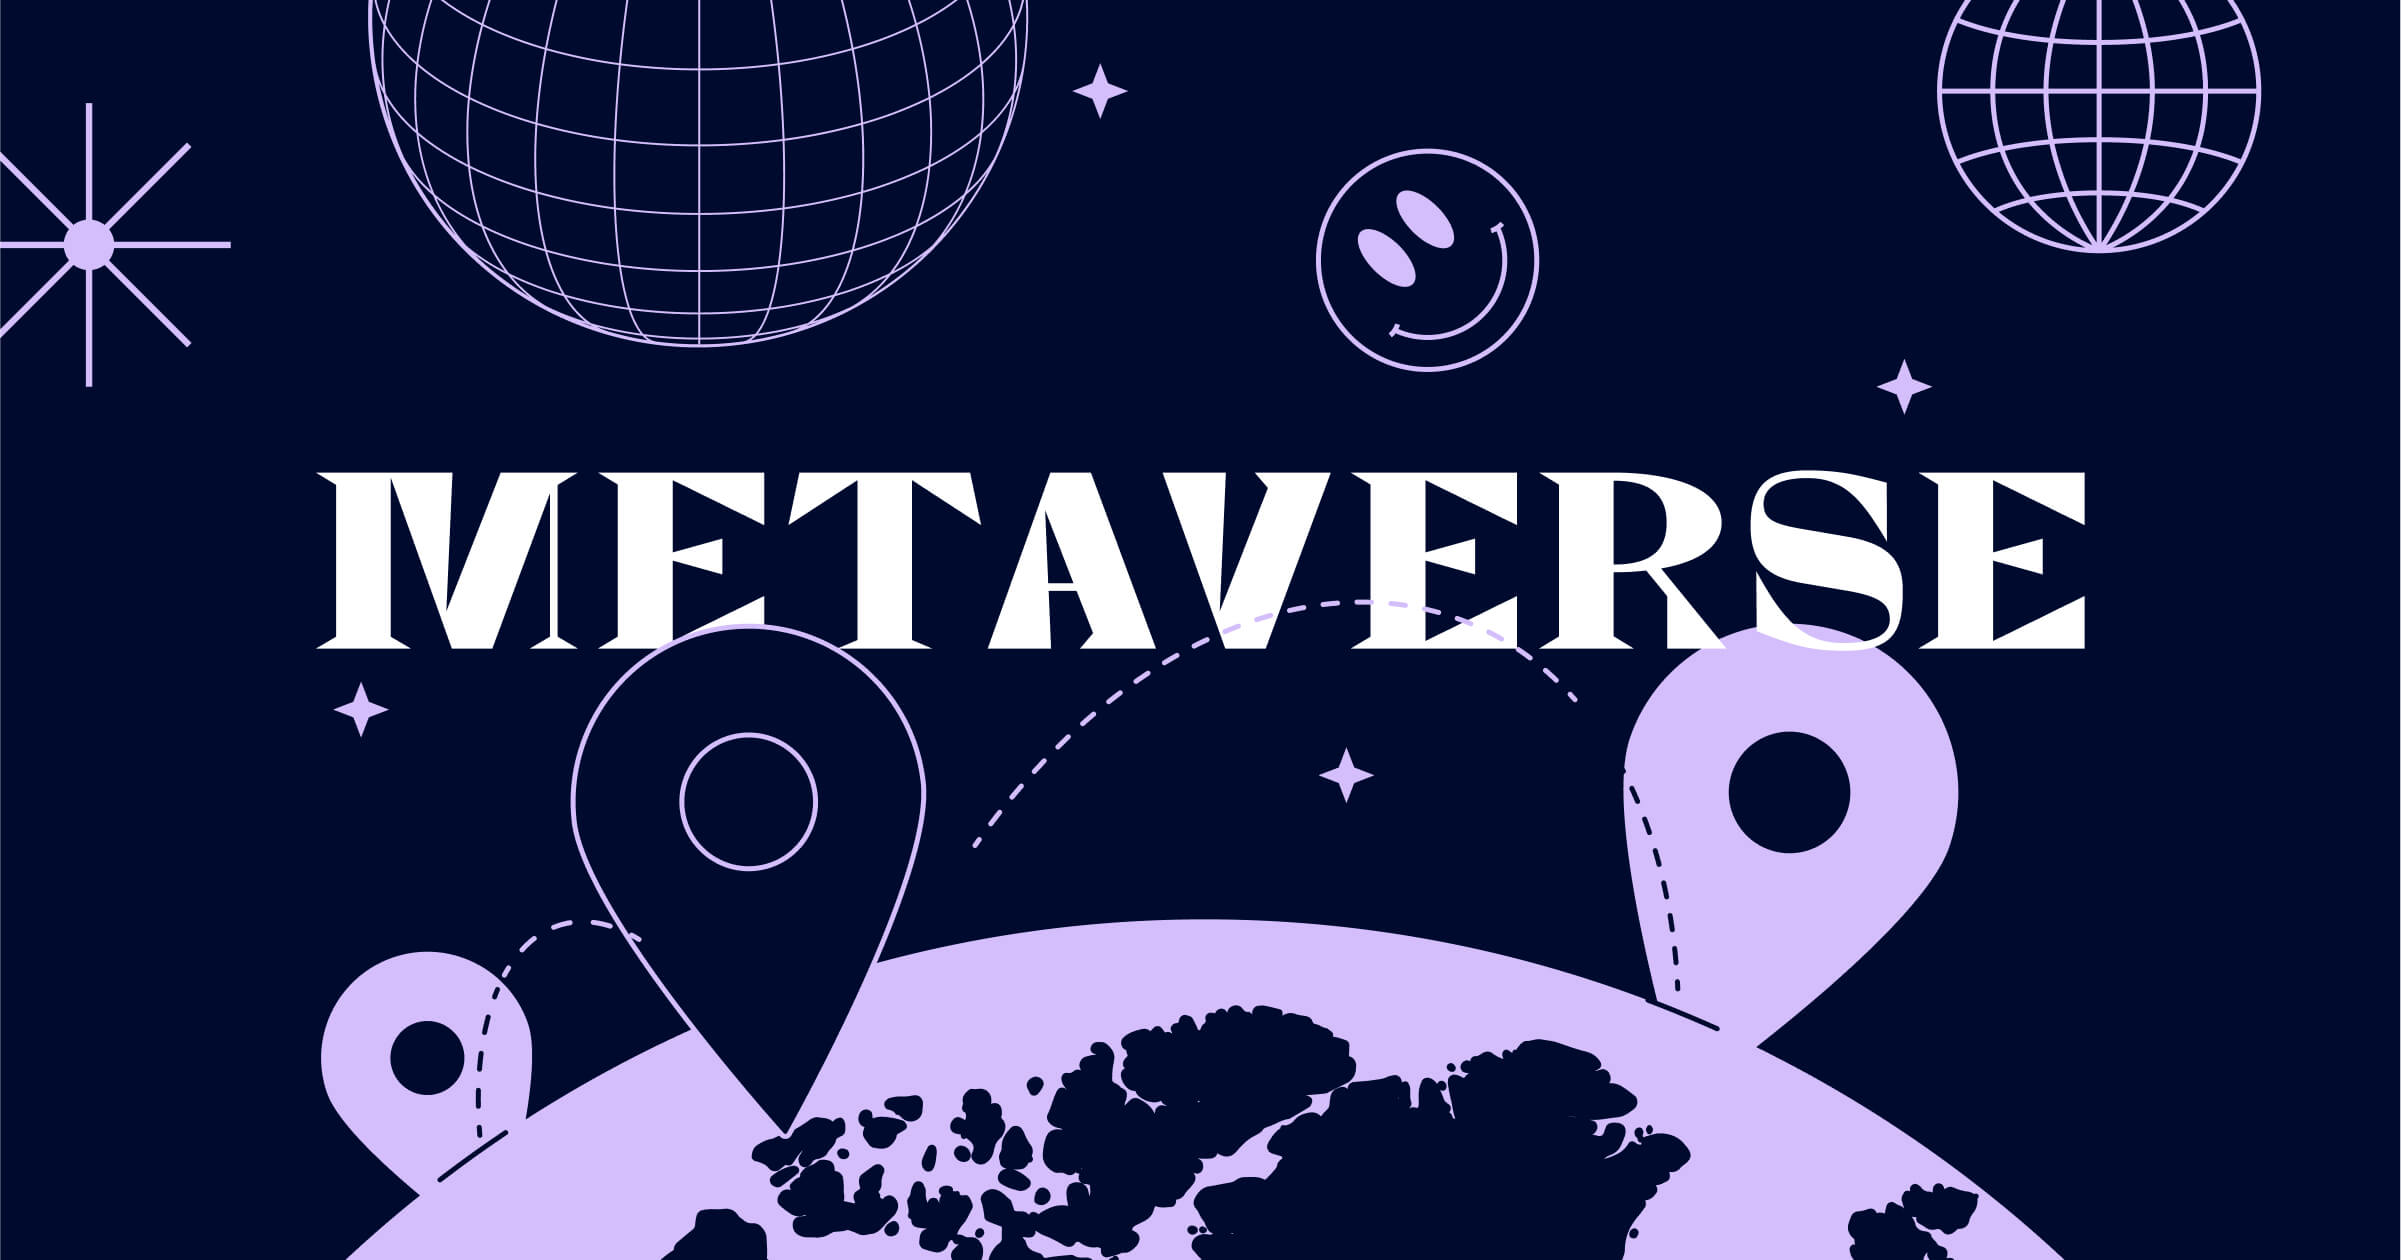 图片展示了深色背景上的“METAVERSE”字样，周围有地球、定位标记、轨迹线和太空元素，如星球和网格球体。